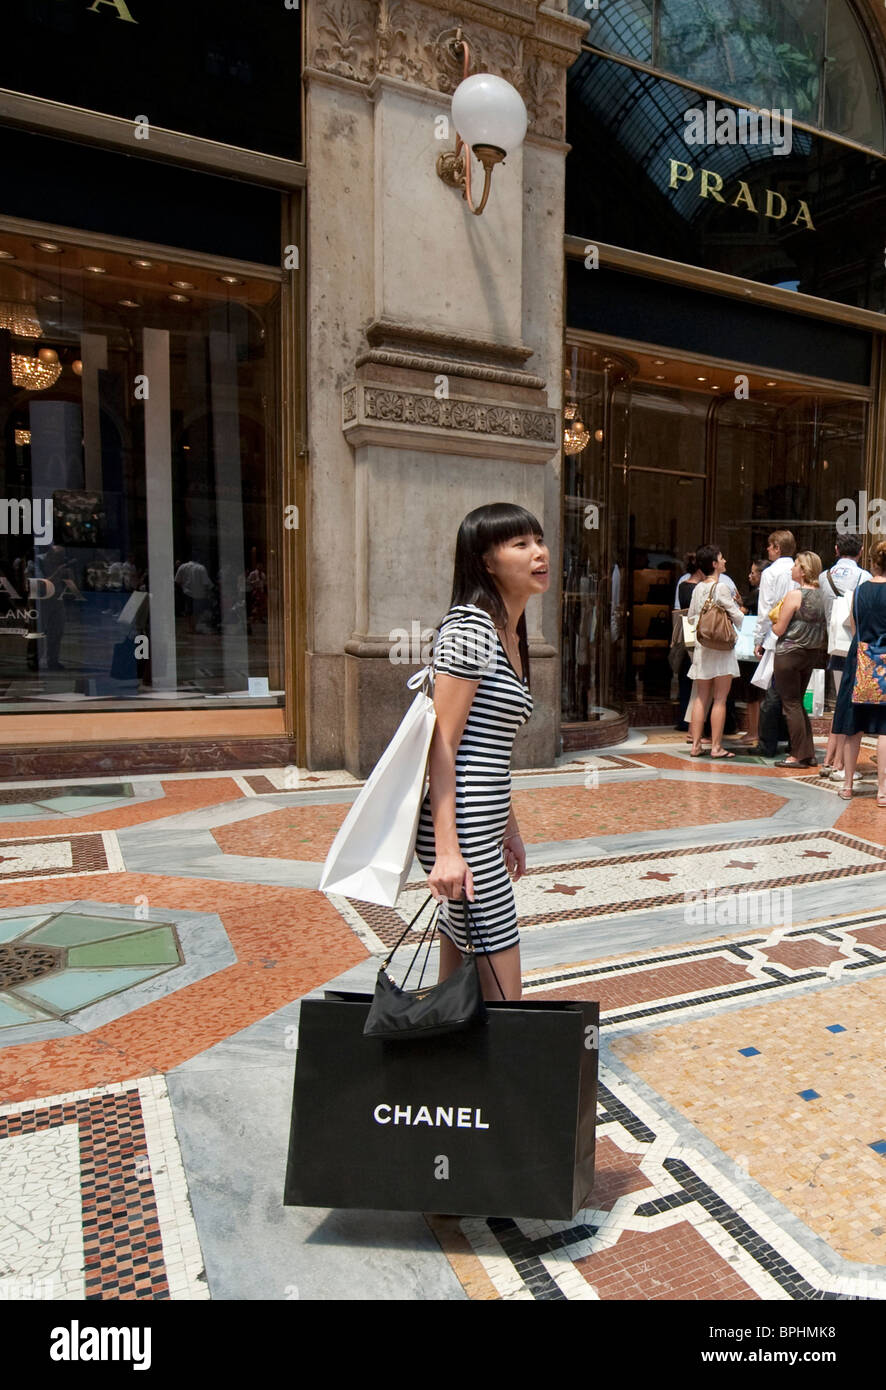 Frau, die eine Chanel-Tragetasche in Galleria Mailand Italien  Stockfotografie - Alamy